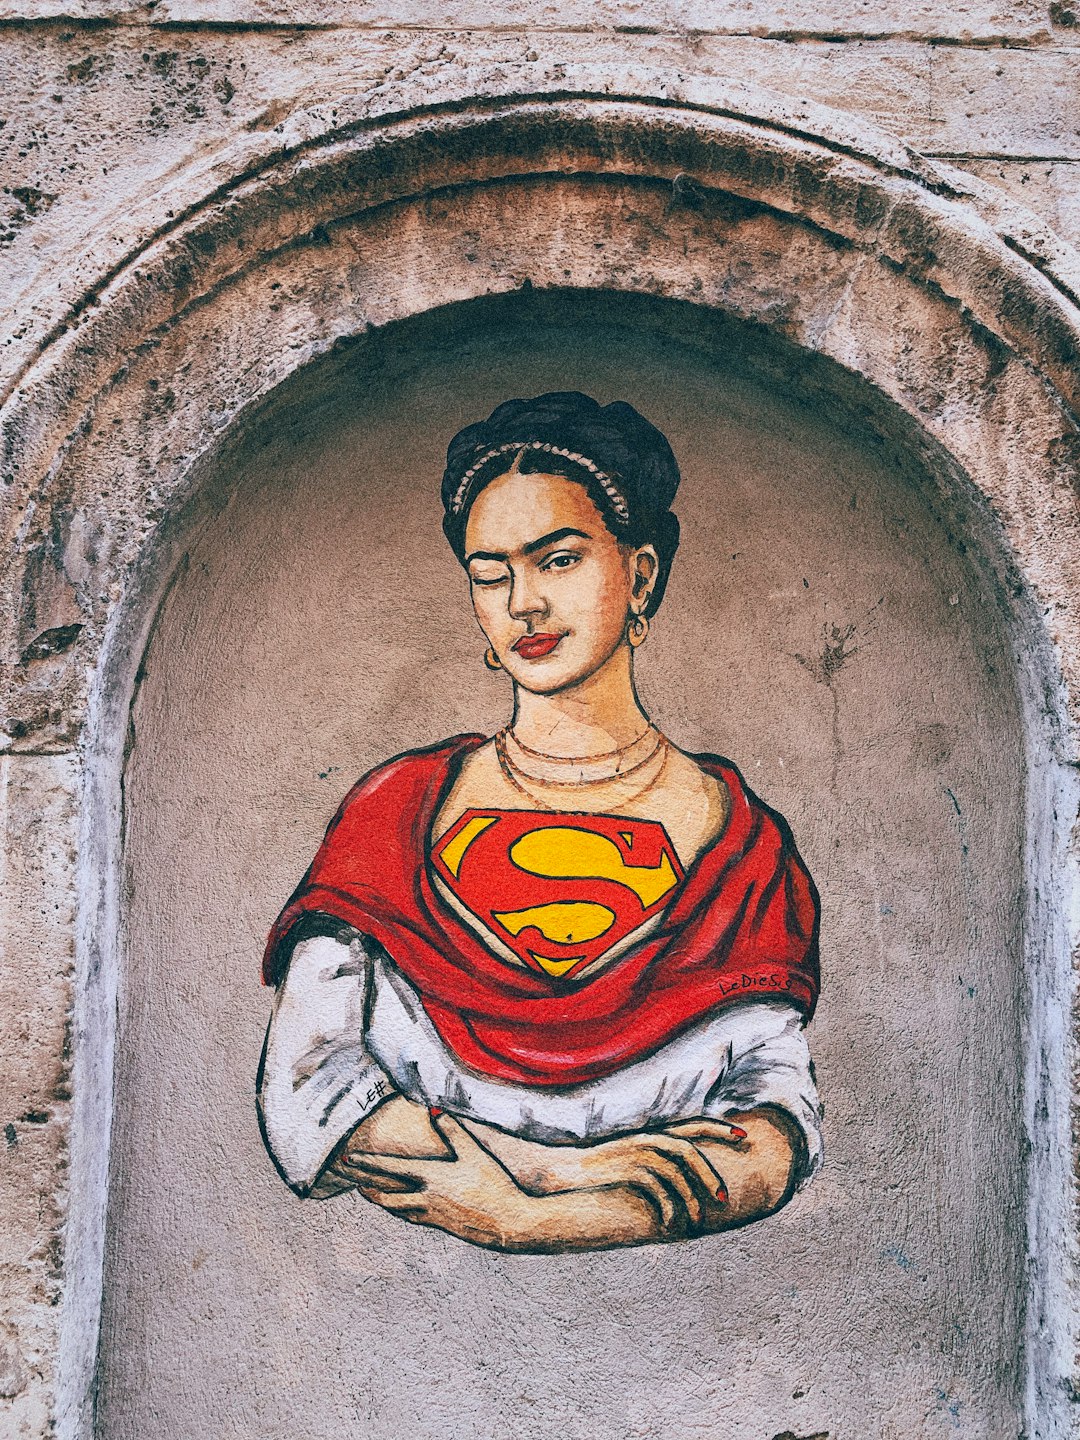 750+ Frida Kahlo Pictures | Download Free Images on Unsplash